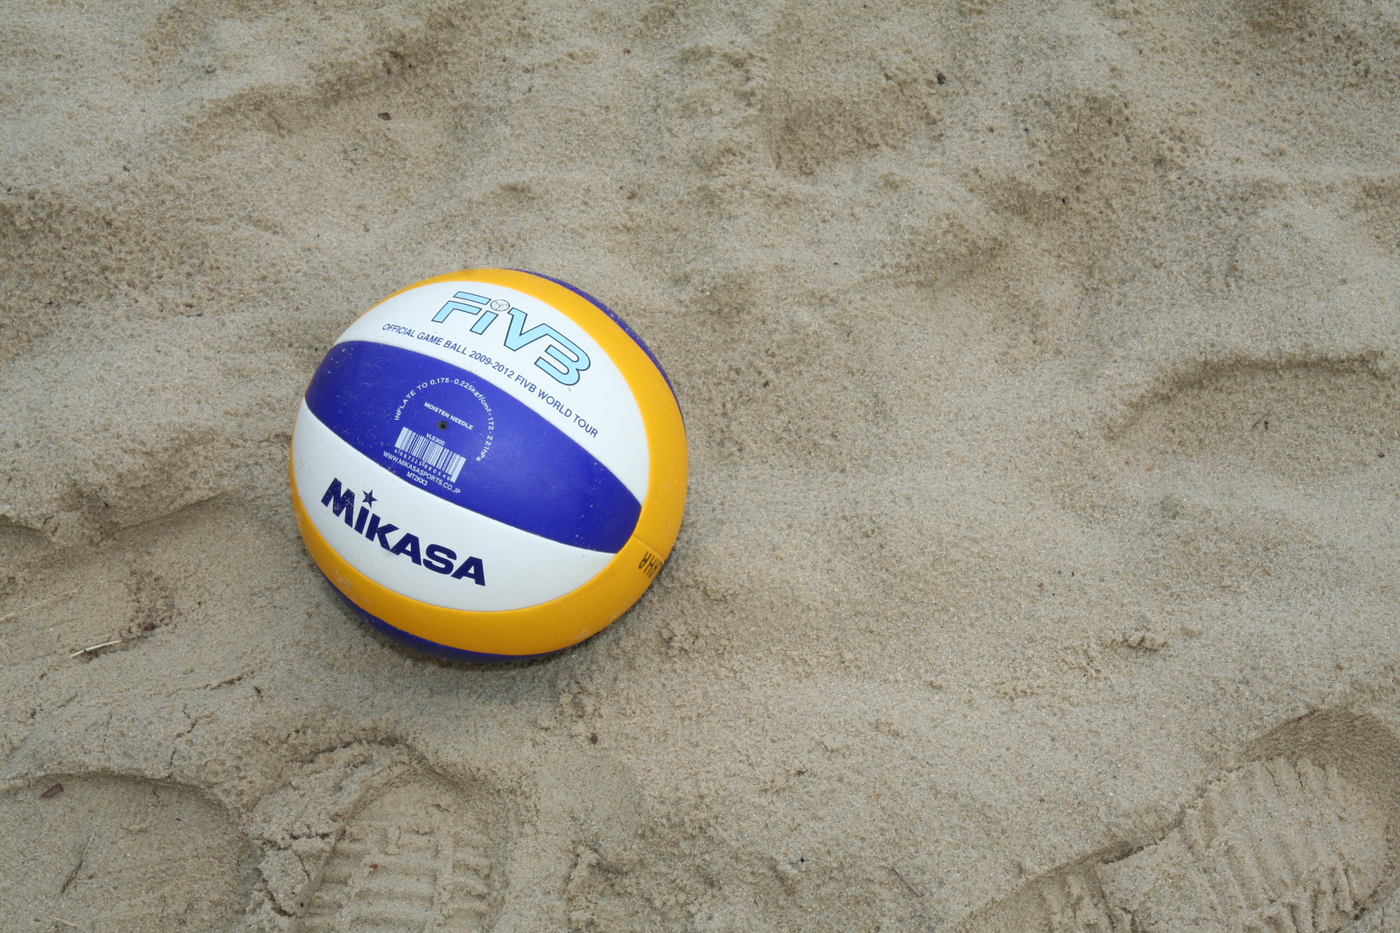 Volleyball liegt im Sand